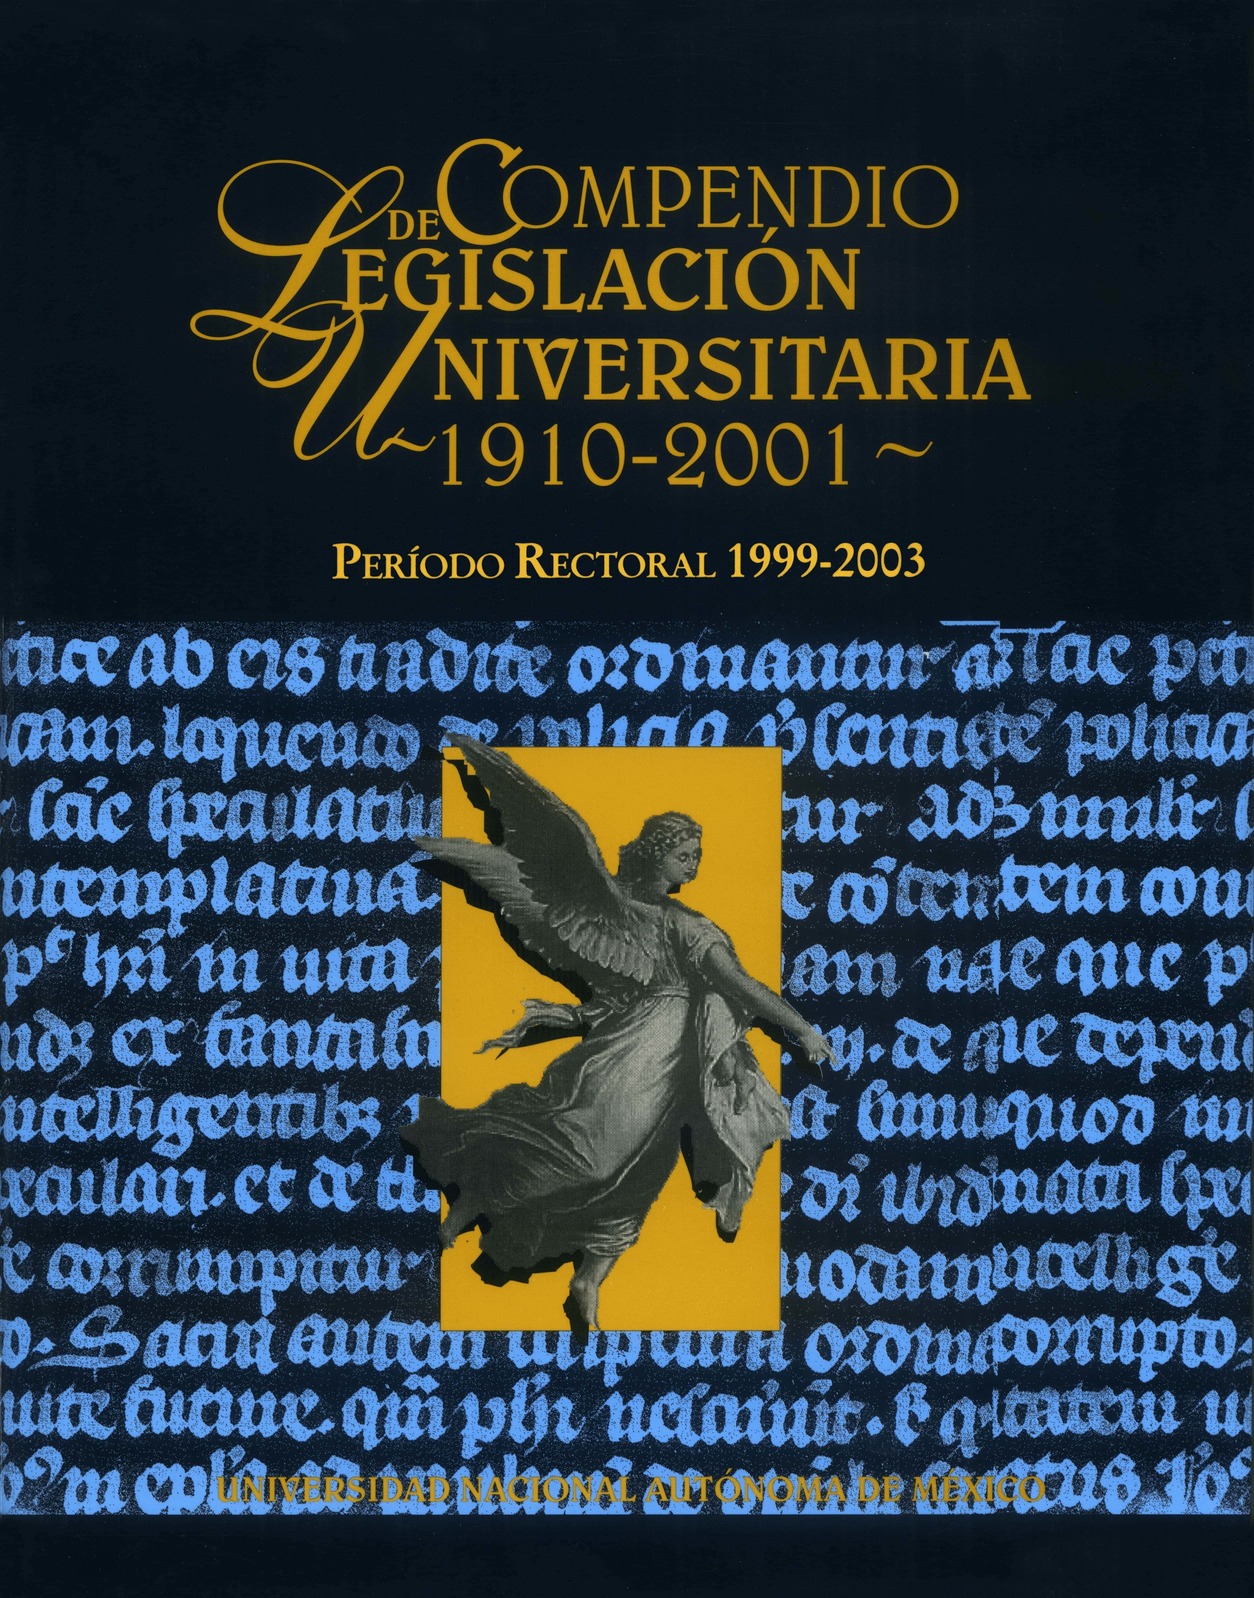 Compendio de Legislación Universitaria 1910-2001, cuatro tomos